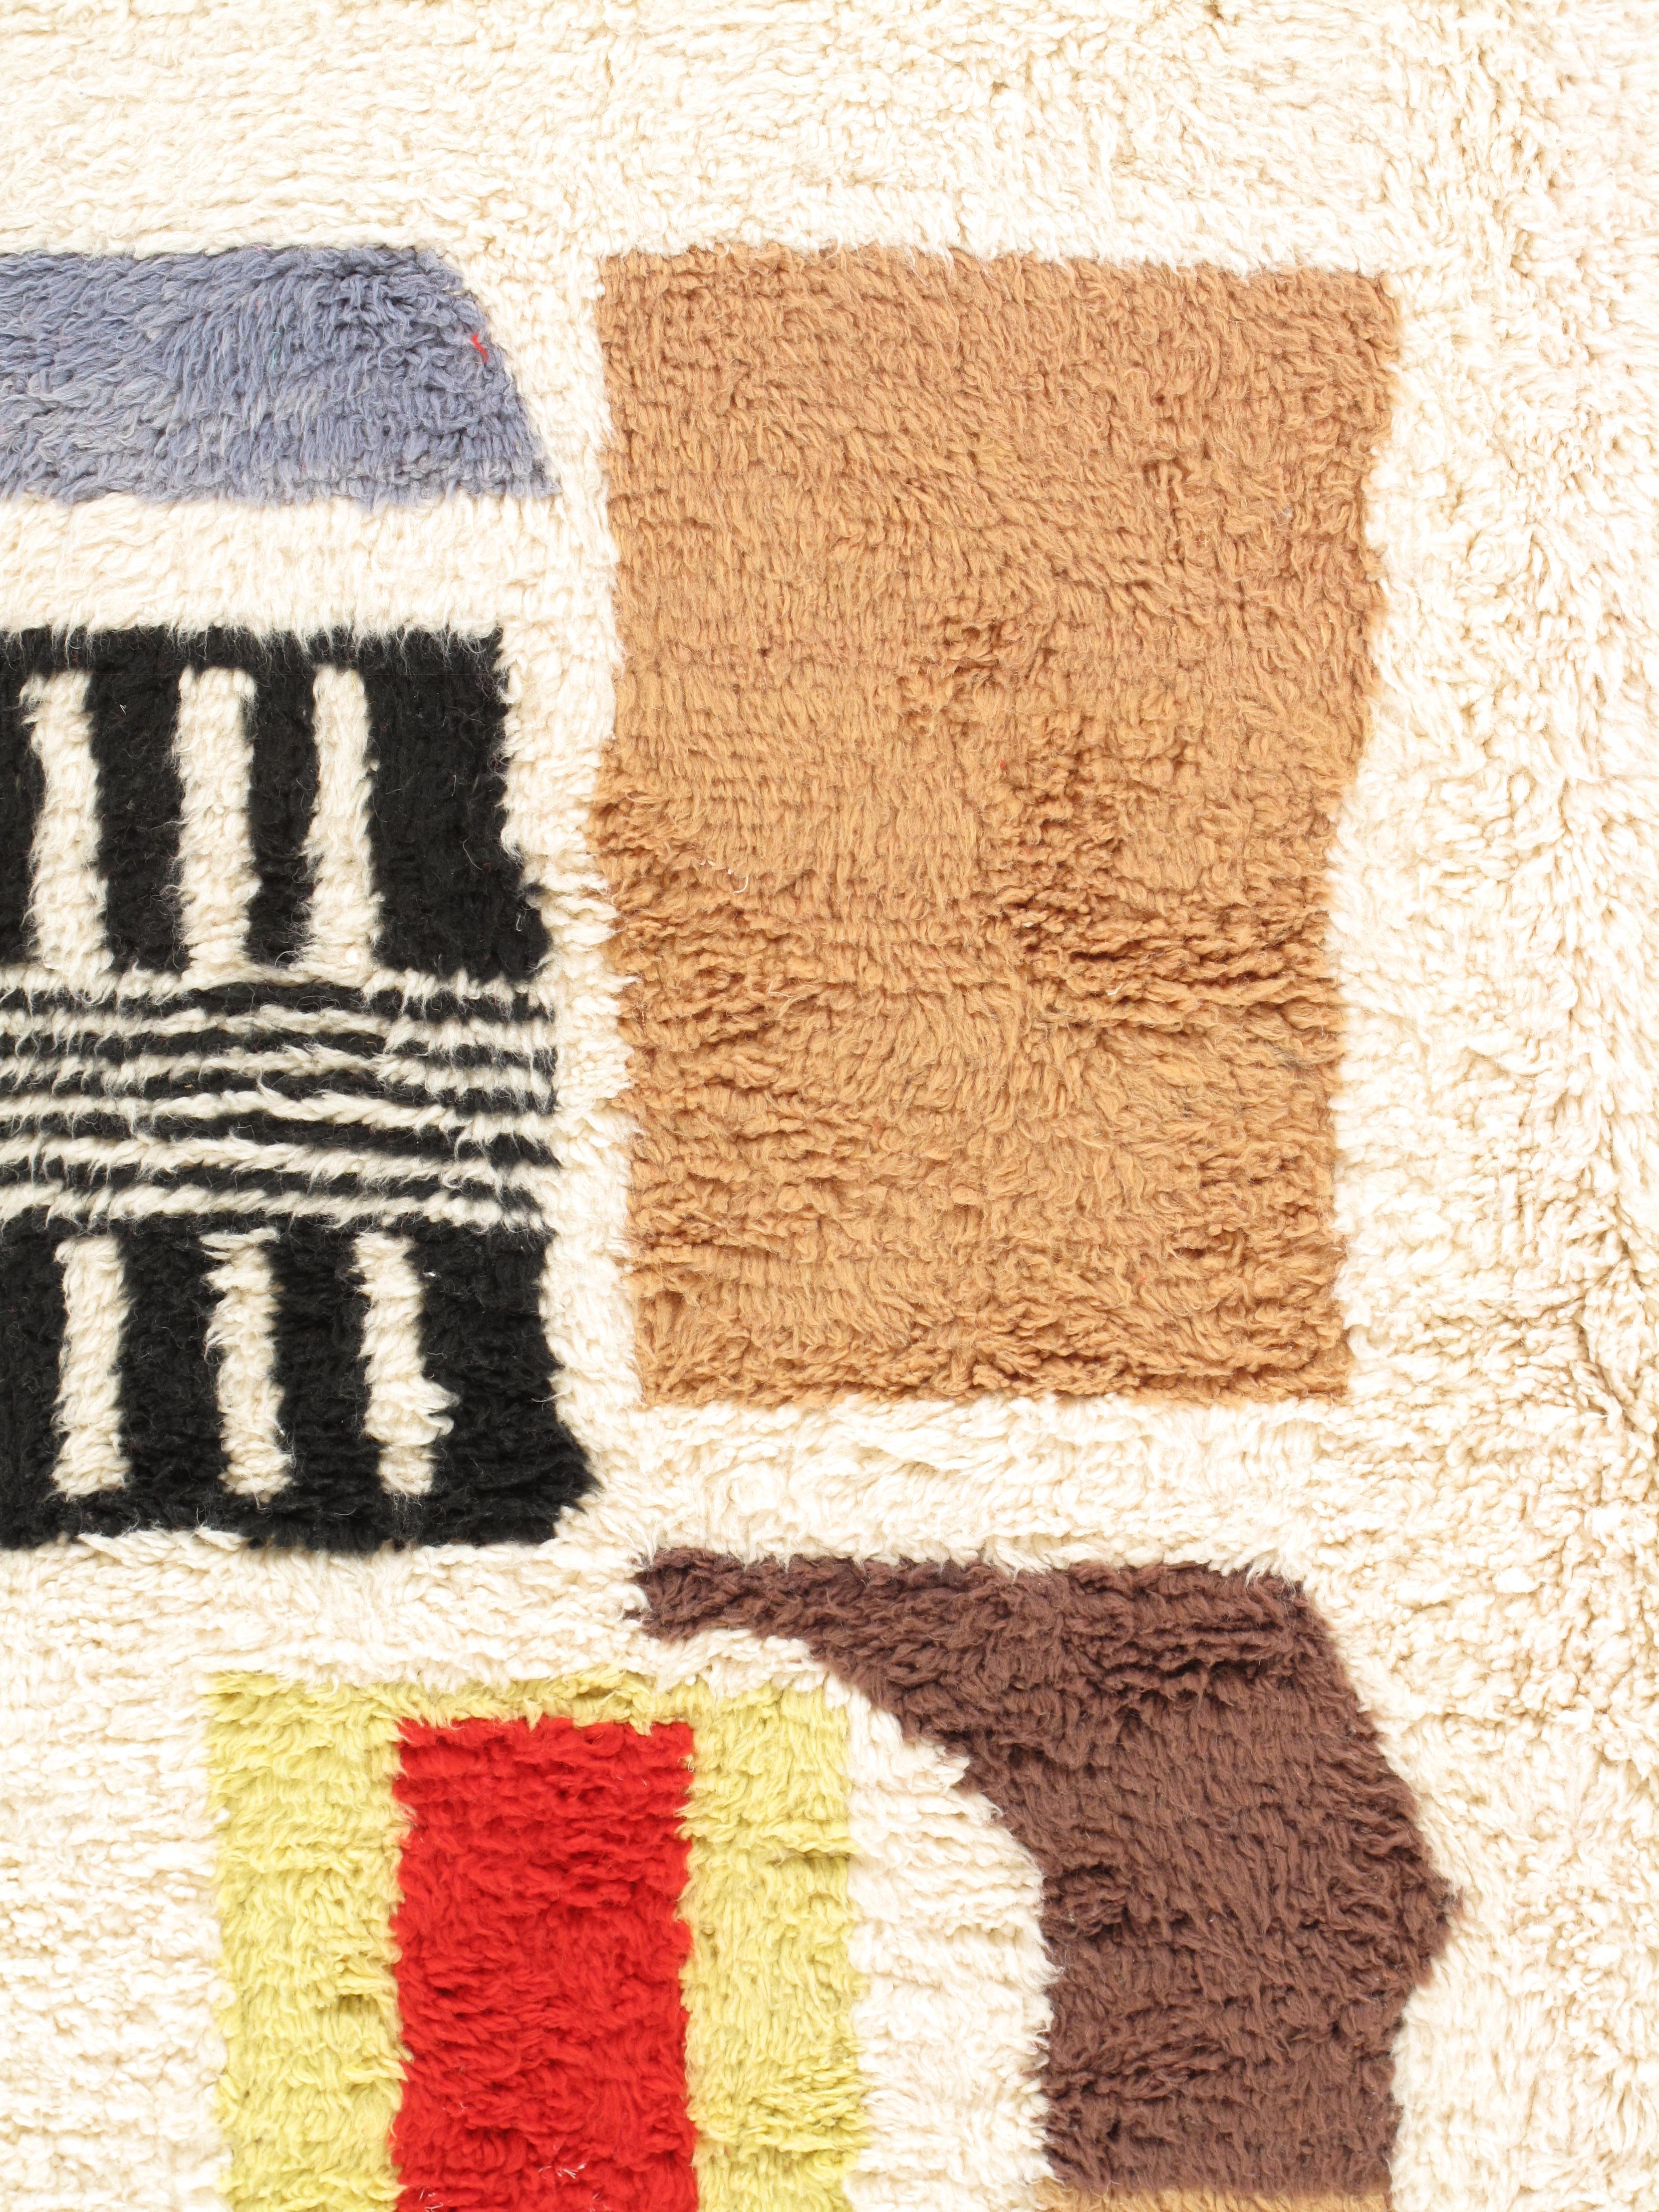 Marokkanische Teppiche im Vintage-Stil sind zeitlose Schätze, die jahrhundertelange Tradition und Handwerkskunst verkörpern. Jeder Teppich erzählt eine Geschichte über die marokkanische Kultur, die Geschichte und die geschickten Hände, die ihn